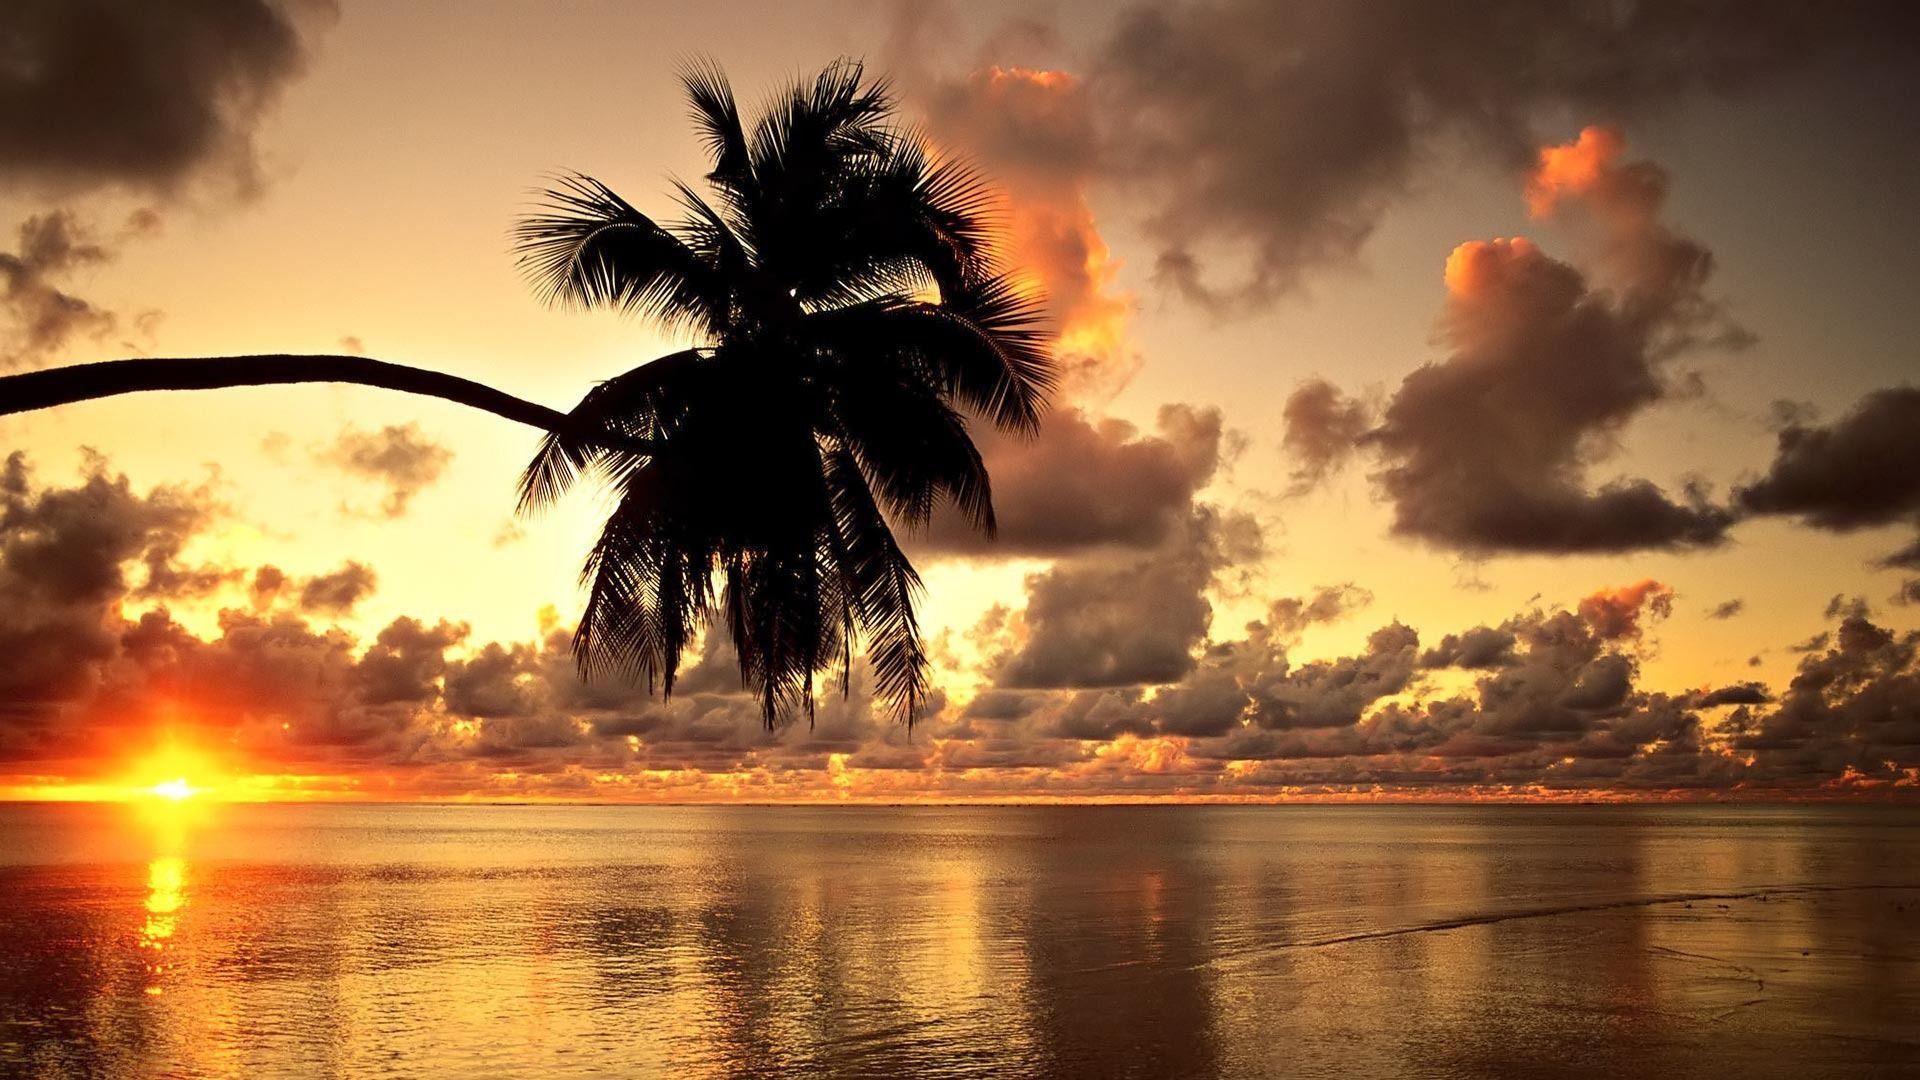 Hawaiian Sunset HD Beach Wallpaper 1080p. Beach wallpaper, Beach